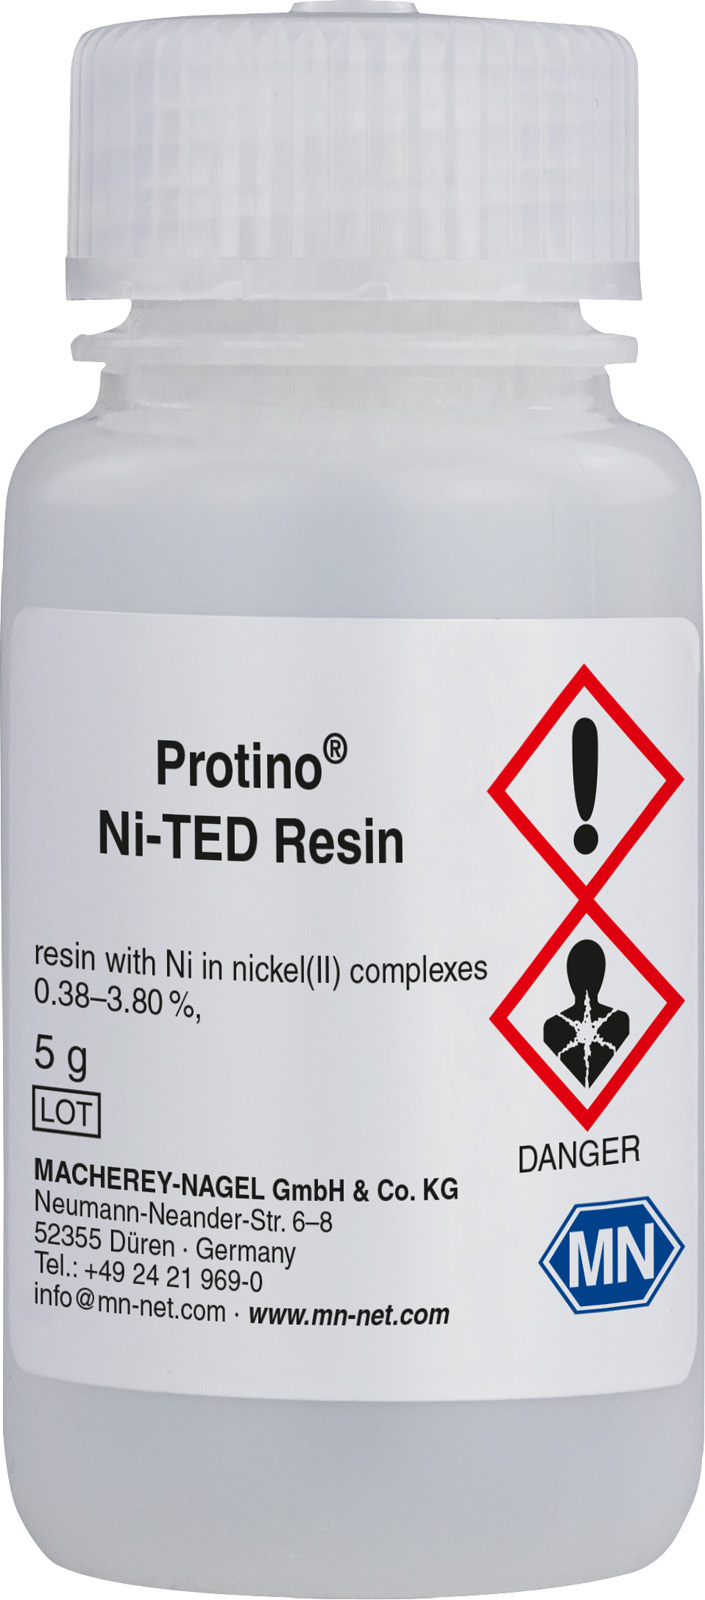 Oczyszczanie His-tag białek Żywica - wiązanie, przepływ grawitacyjny, FPLC™ Protino Ni-TED Resin